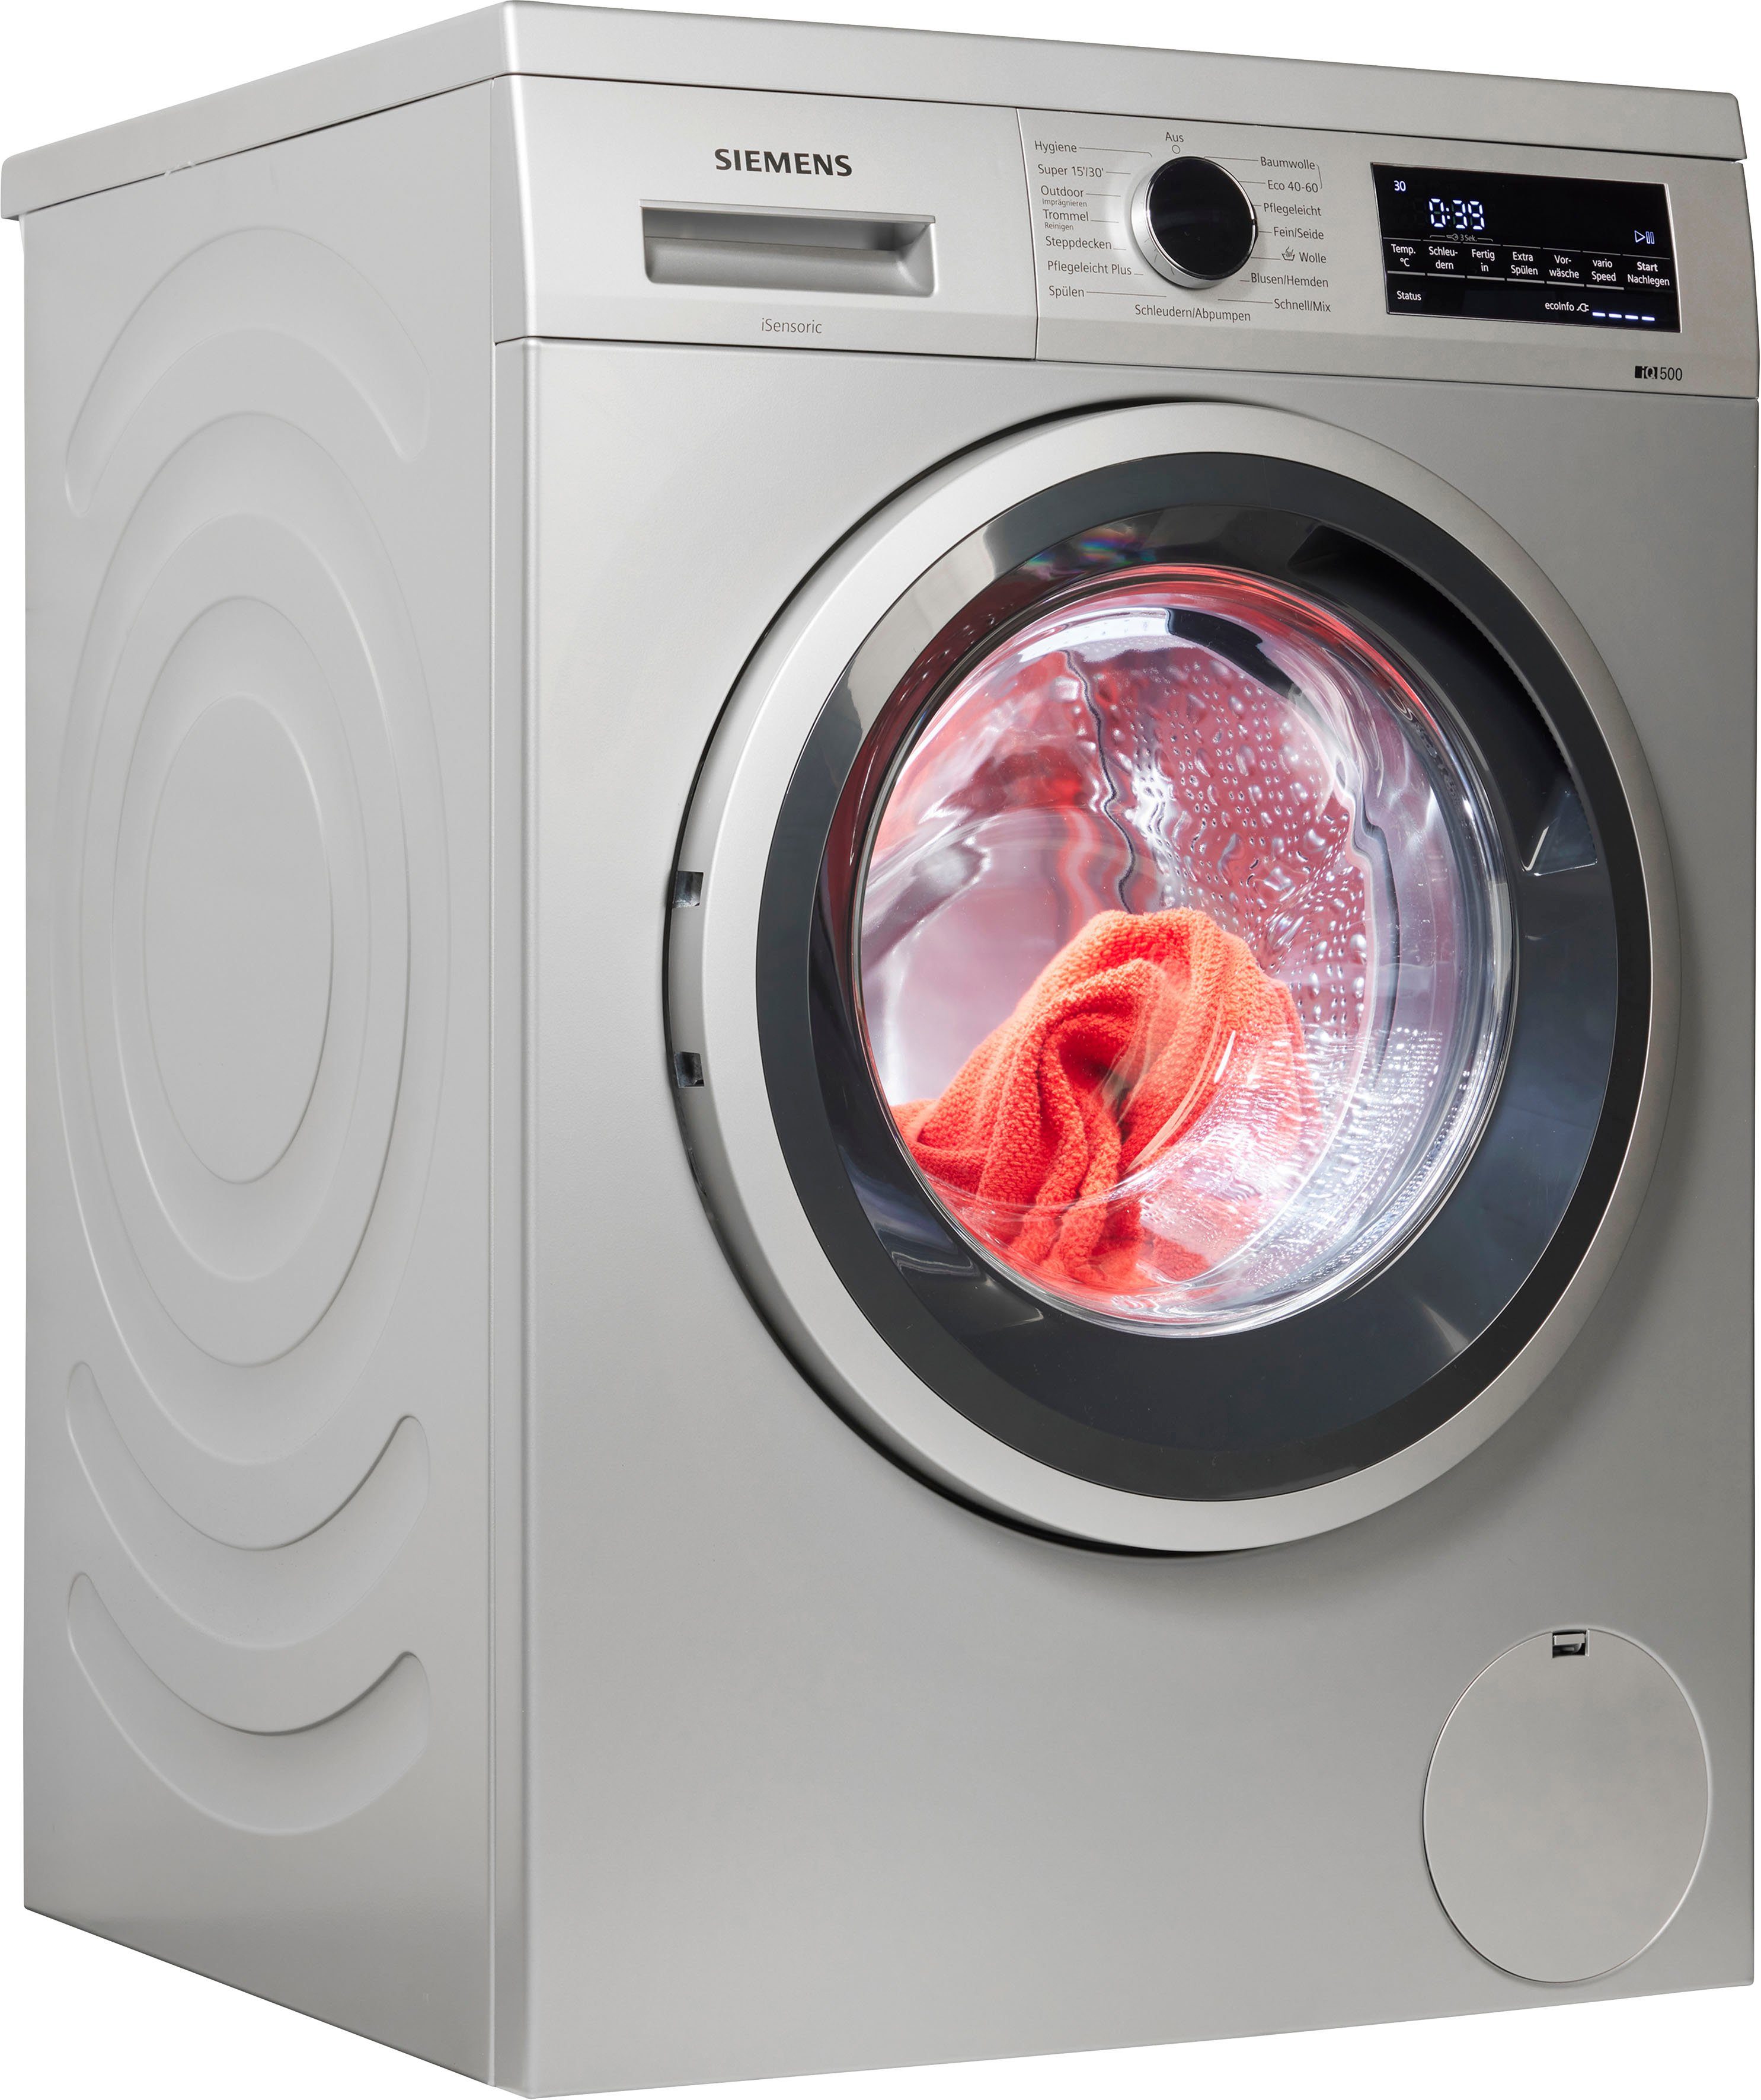 SIEMENS Waschmaschine WU14UTS9, 9 kg, 1400 U/min, Beste  Energie-Effizienzklasse A - unsere energieeffizienteste Waschmaschine.